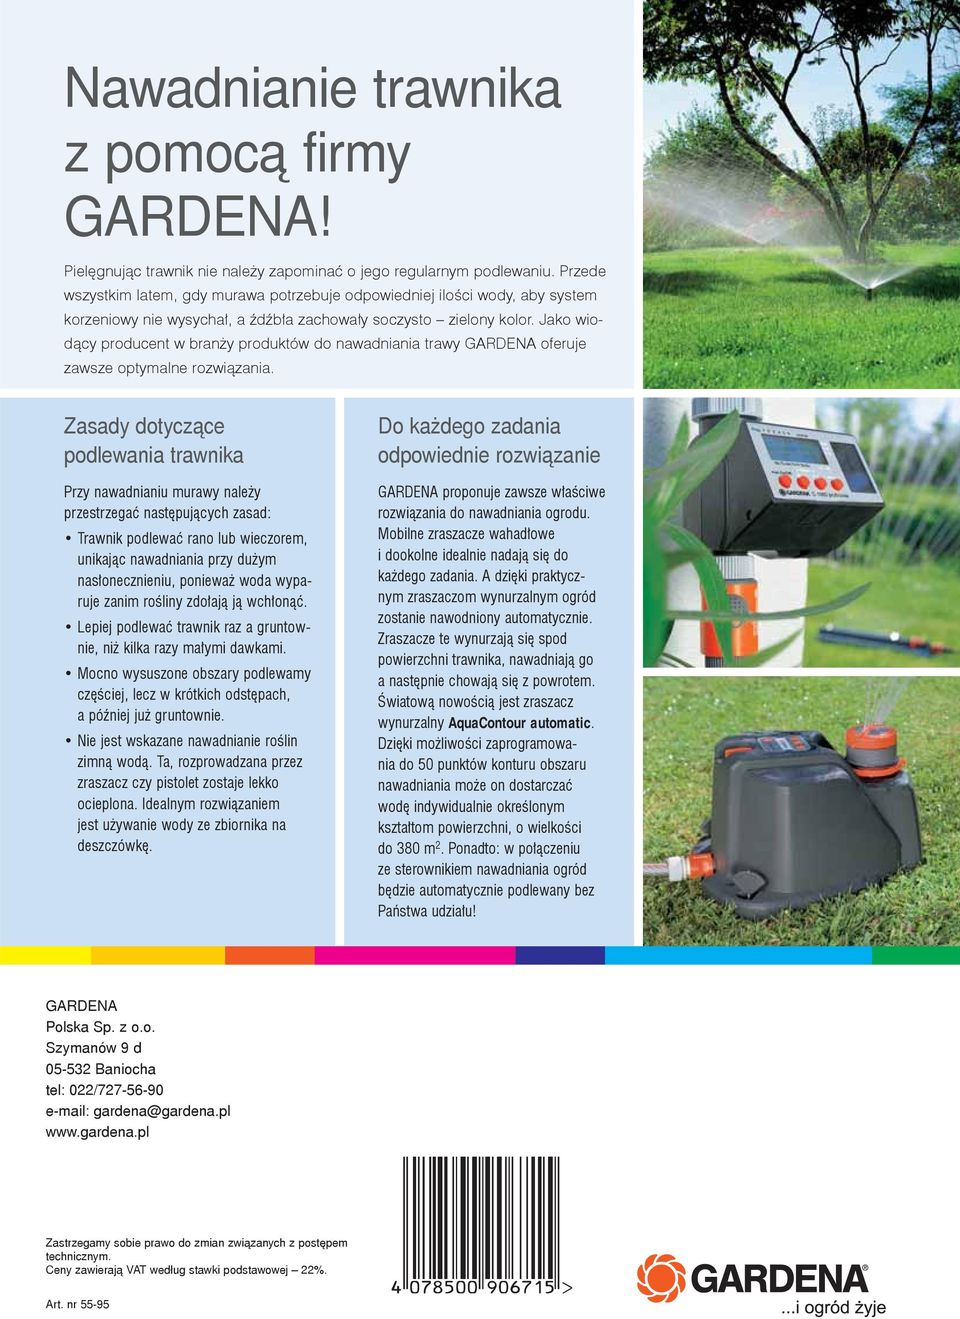 Jako wiodący producent w branży produktów do nawadniania trawy GARDENA oferuje zawsze optymalne rozwiązania.